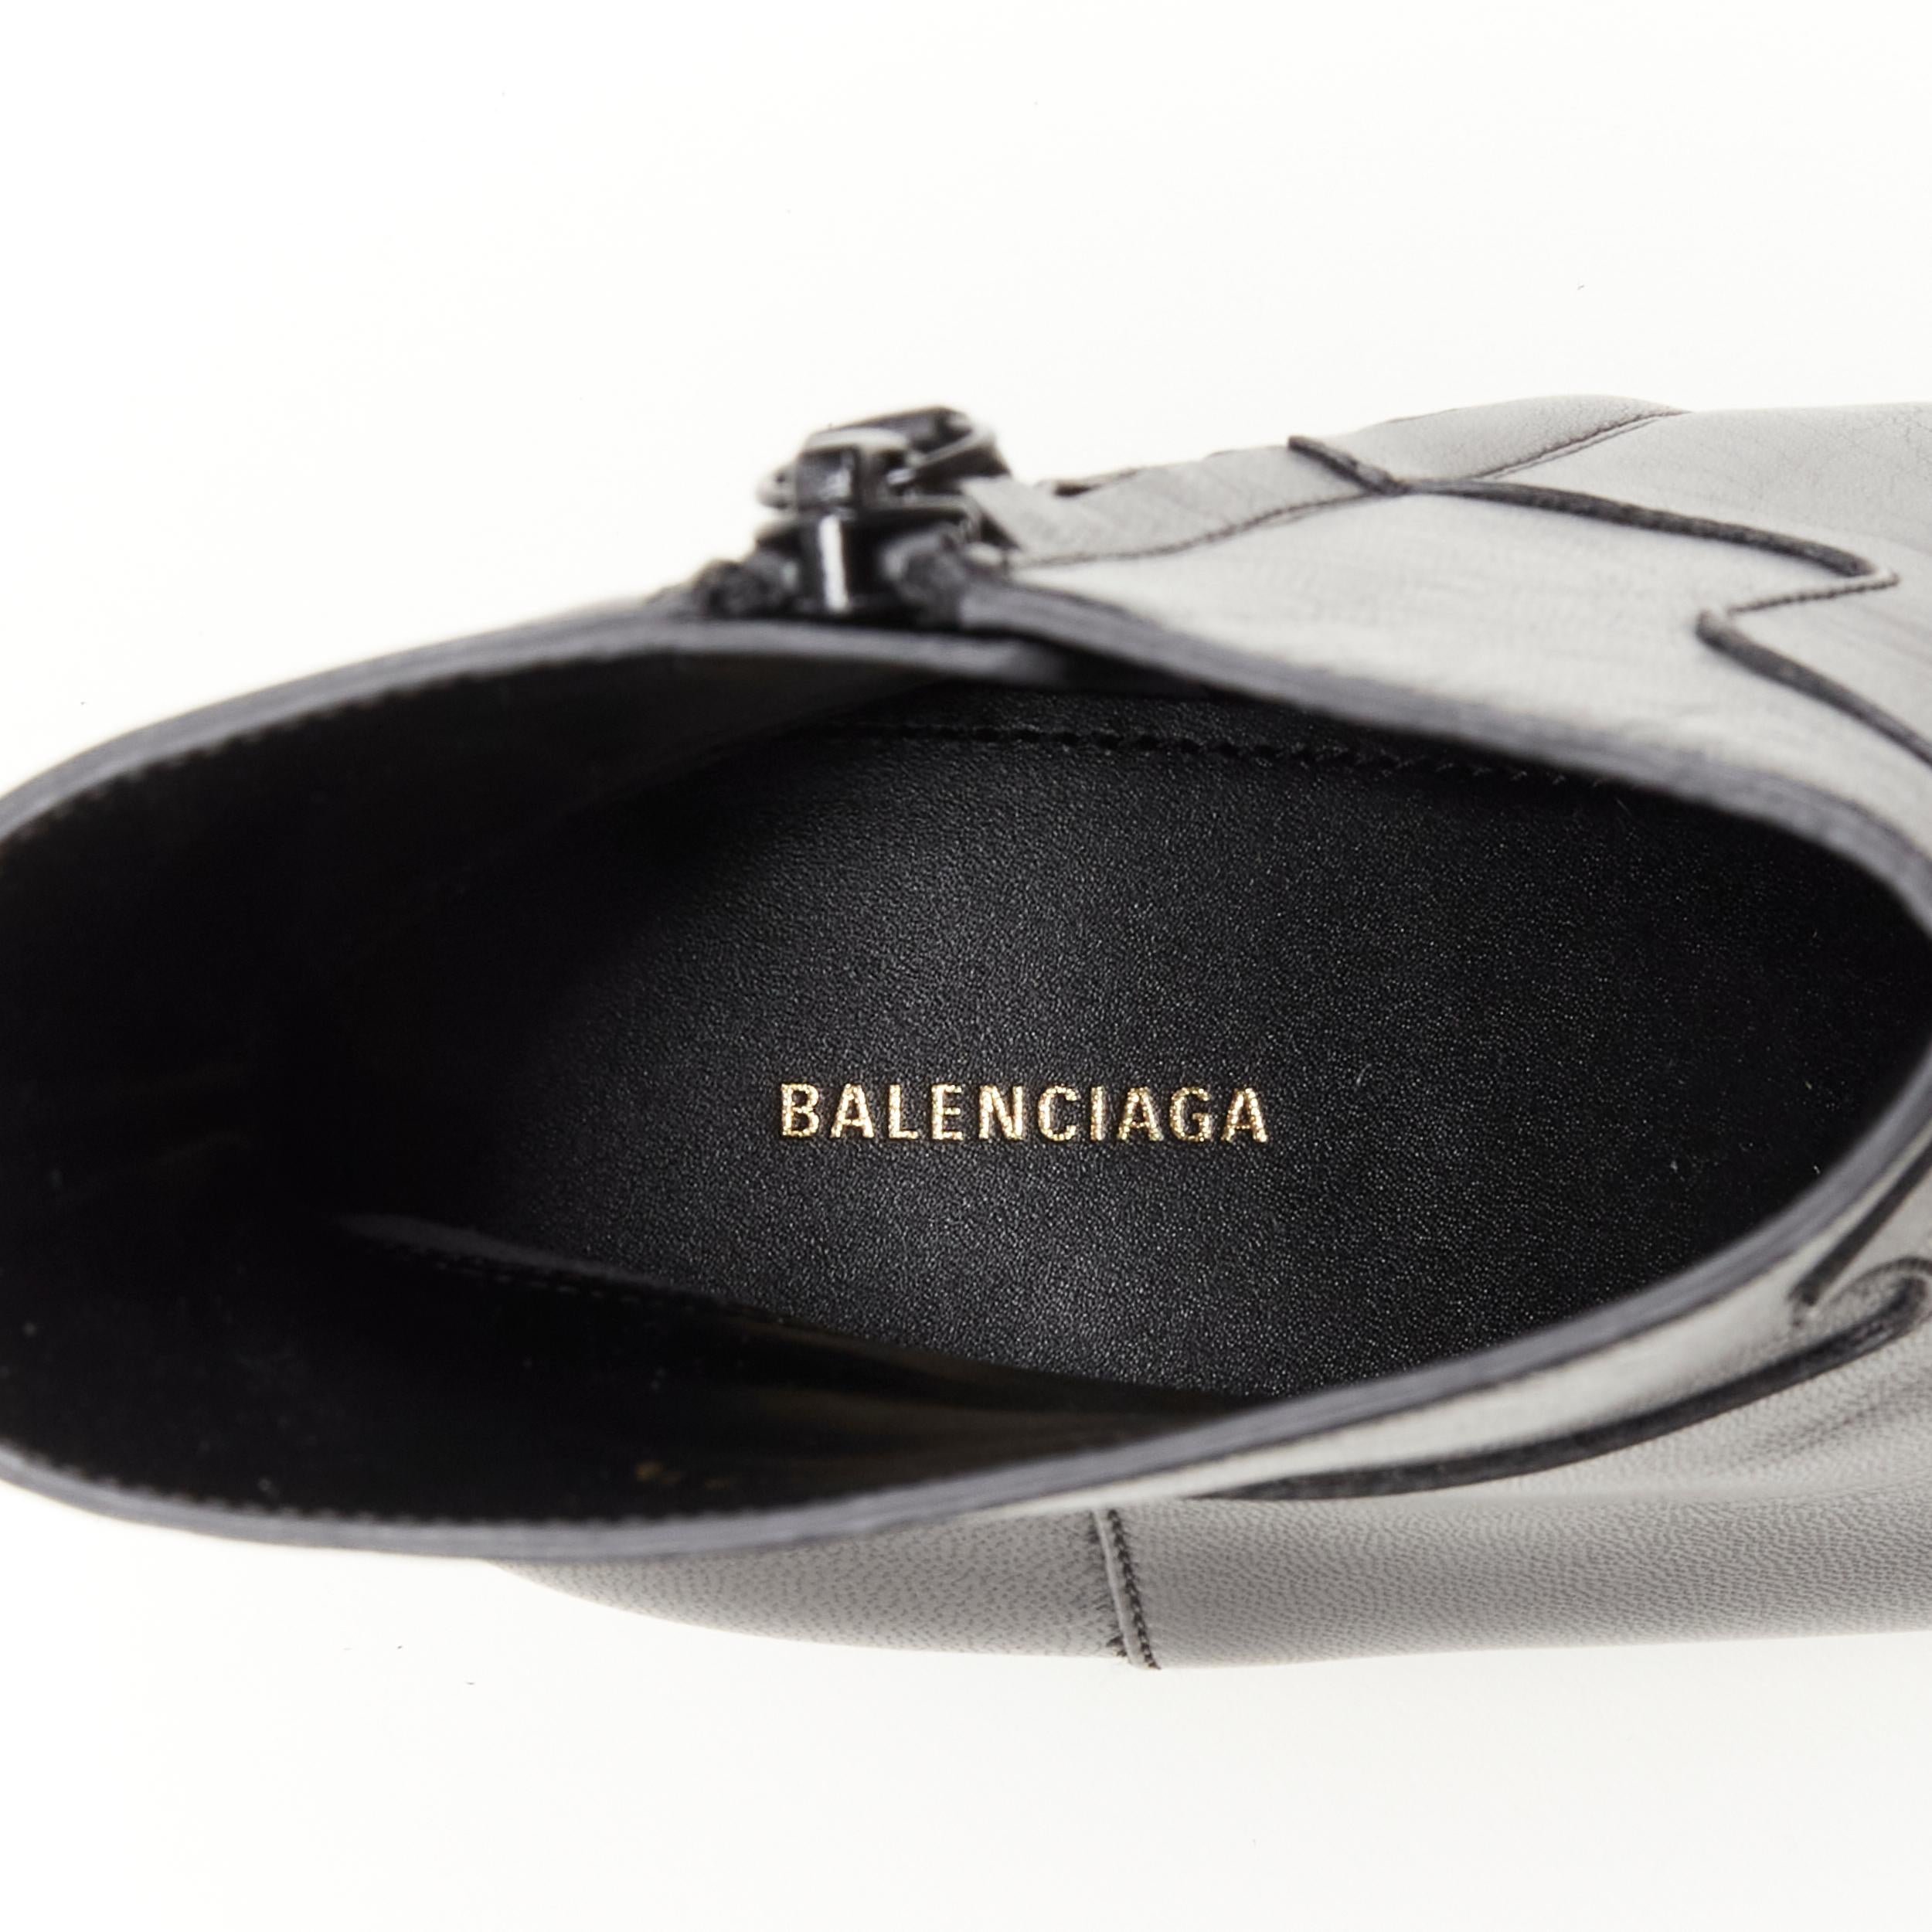 new BALENCIAGA Knife black calfskin leather kitten heel bootie EU37.5 US7.5 3